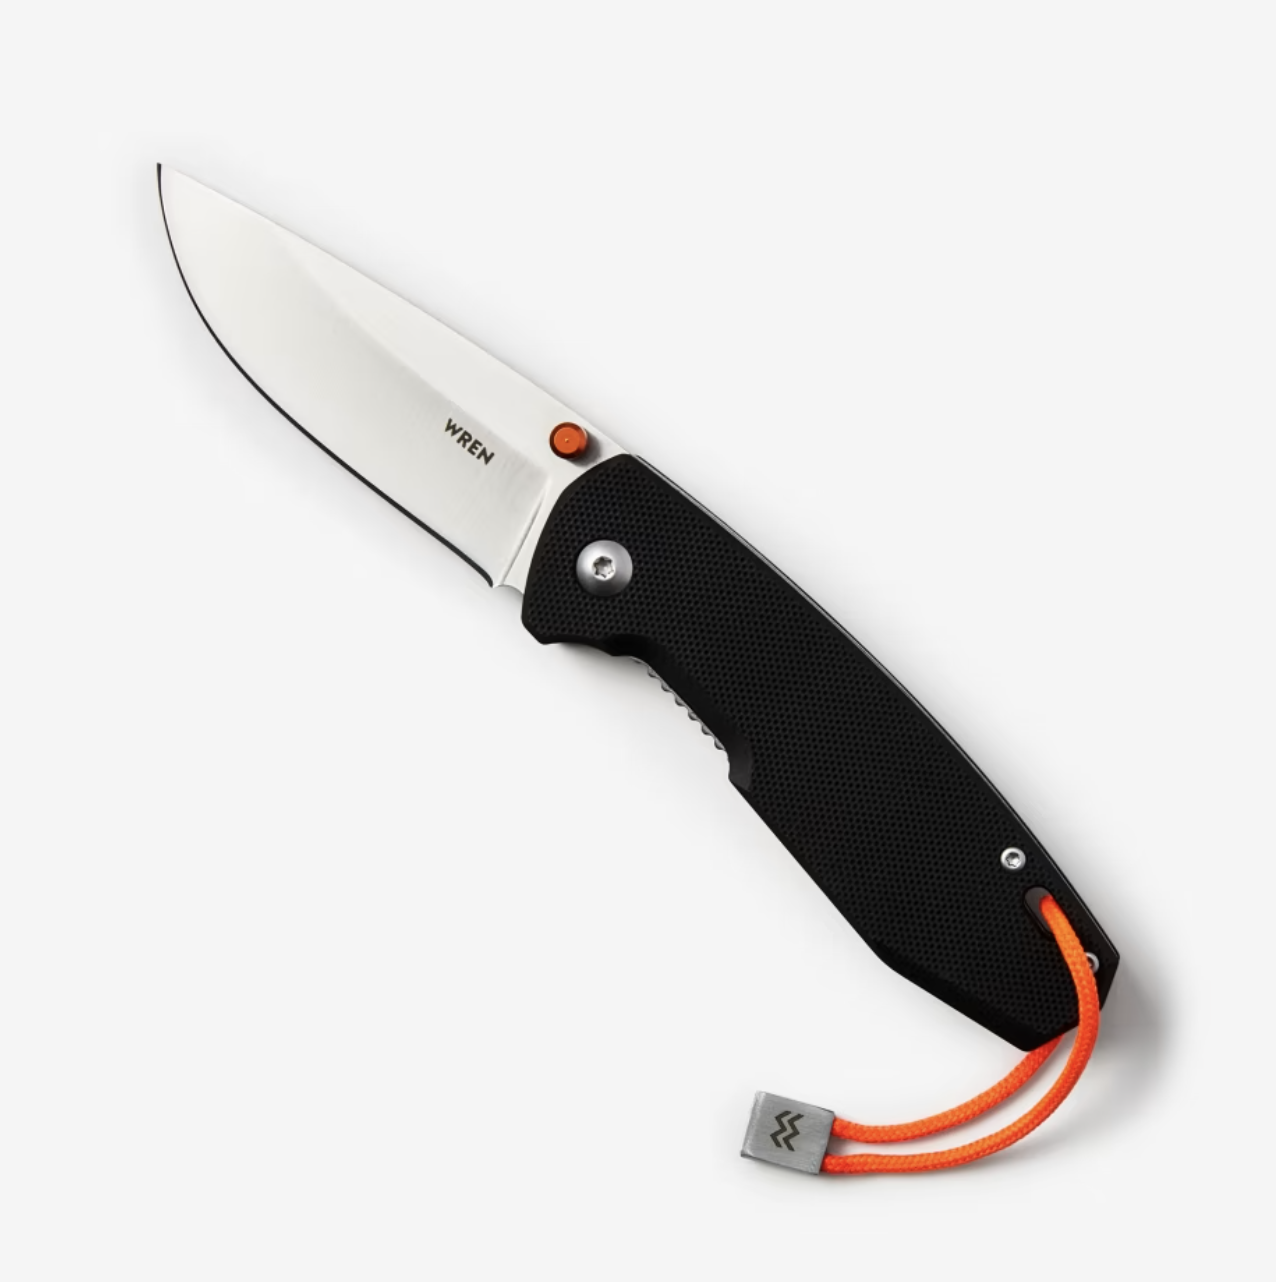 Wren knife